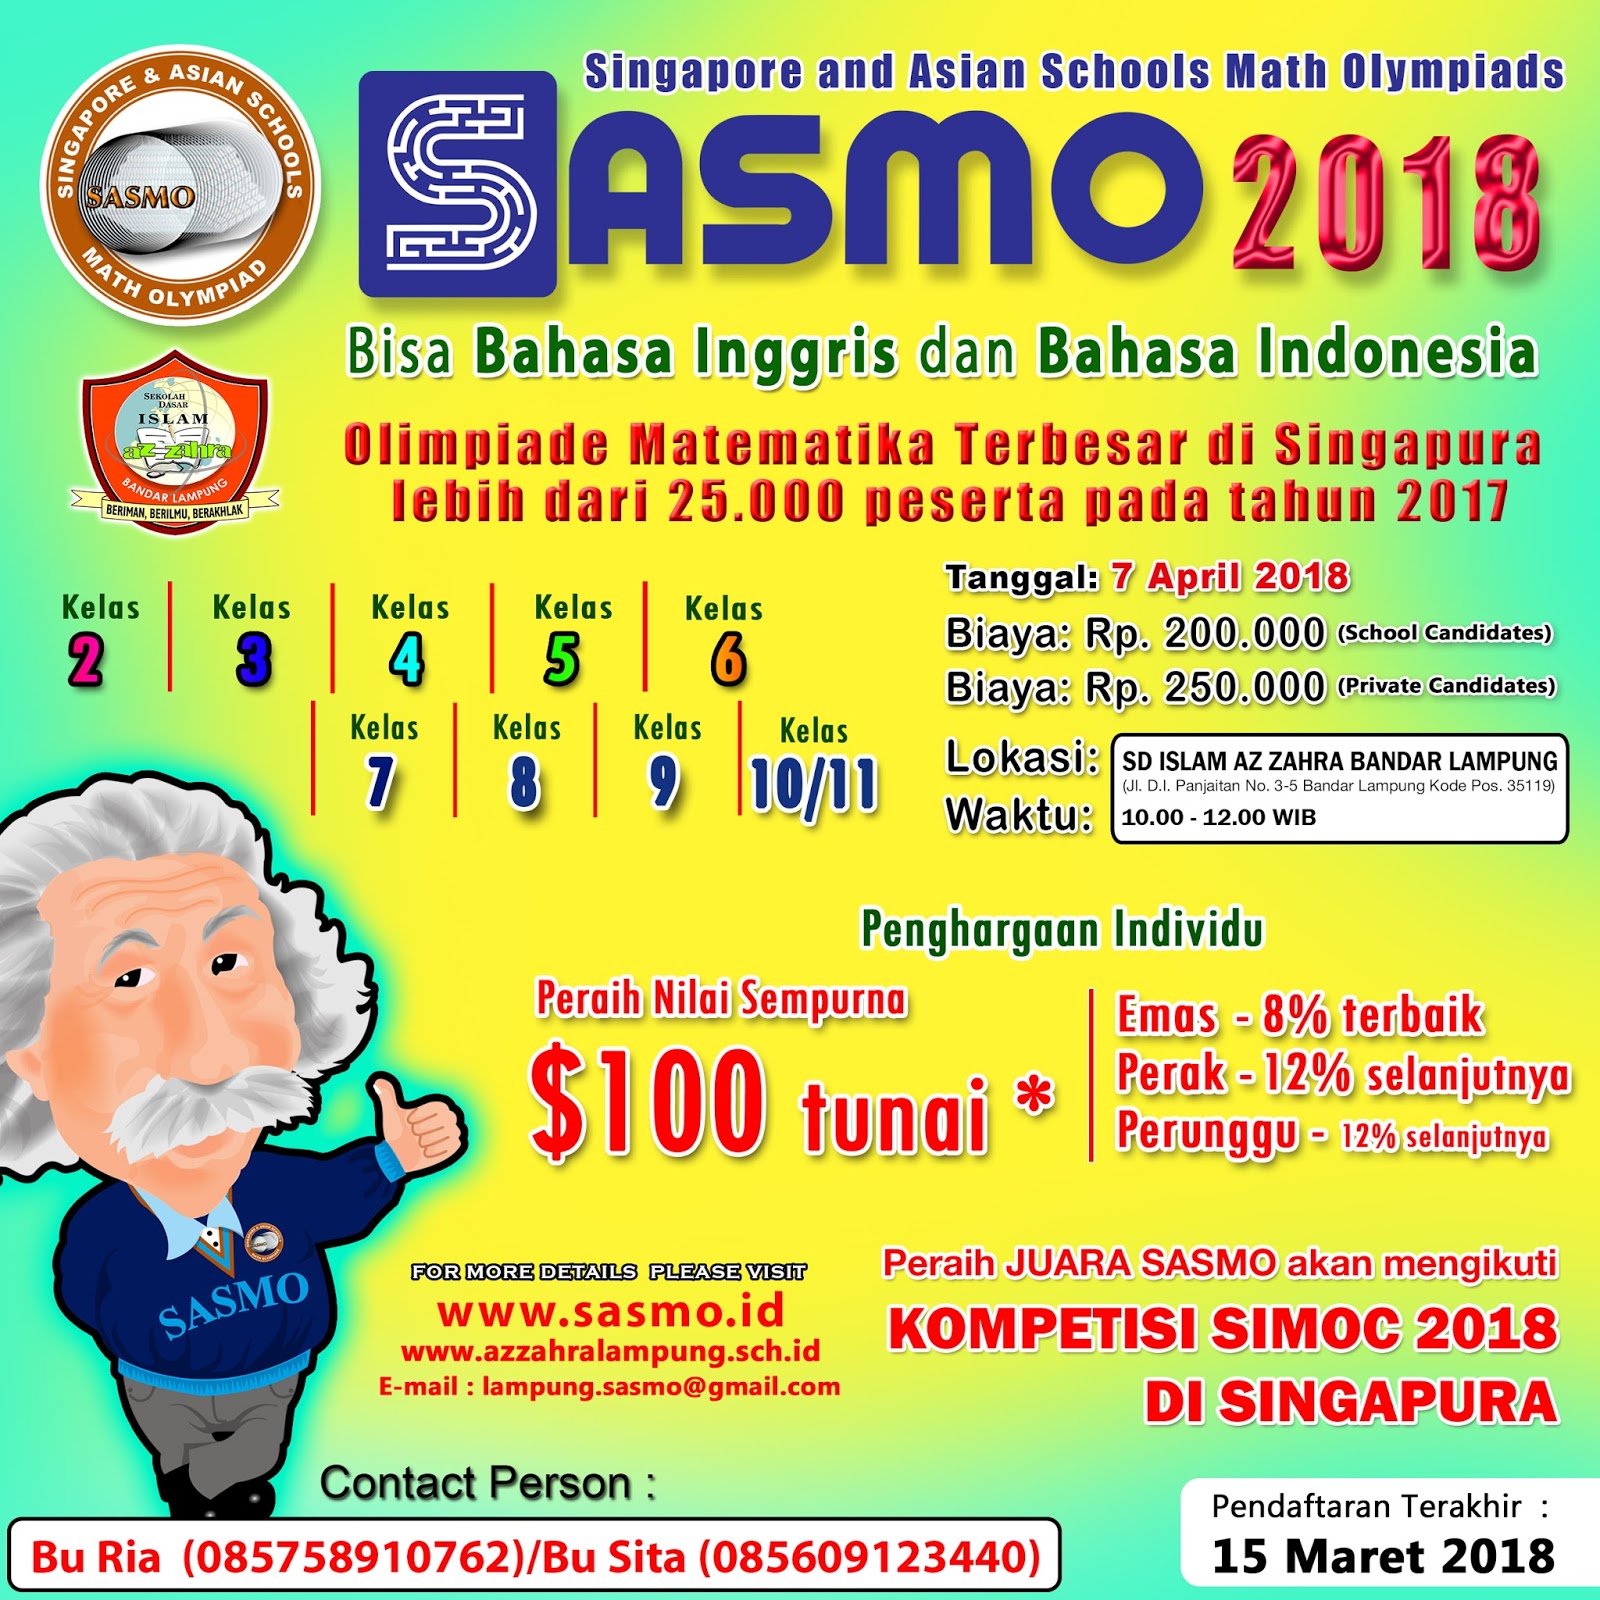 Segera Daftar SASMO 2018 Olimpiade Matematika Internasional Paling Bergengsi